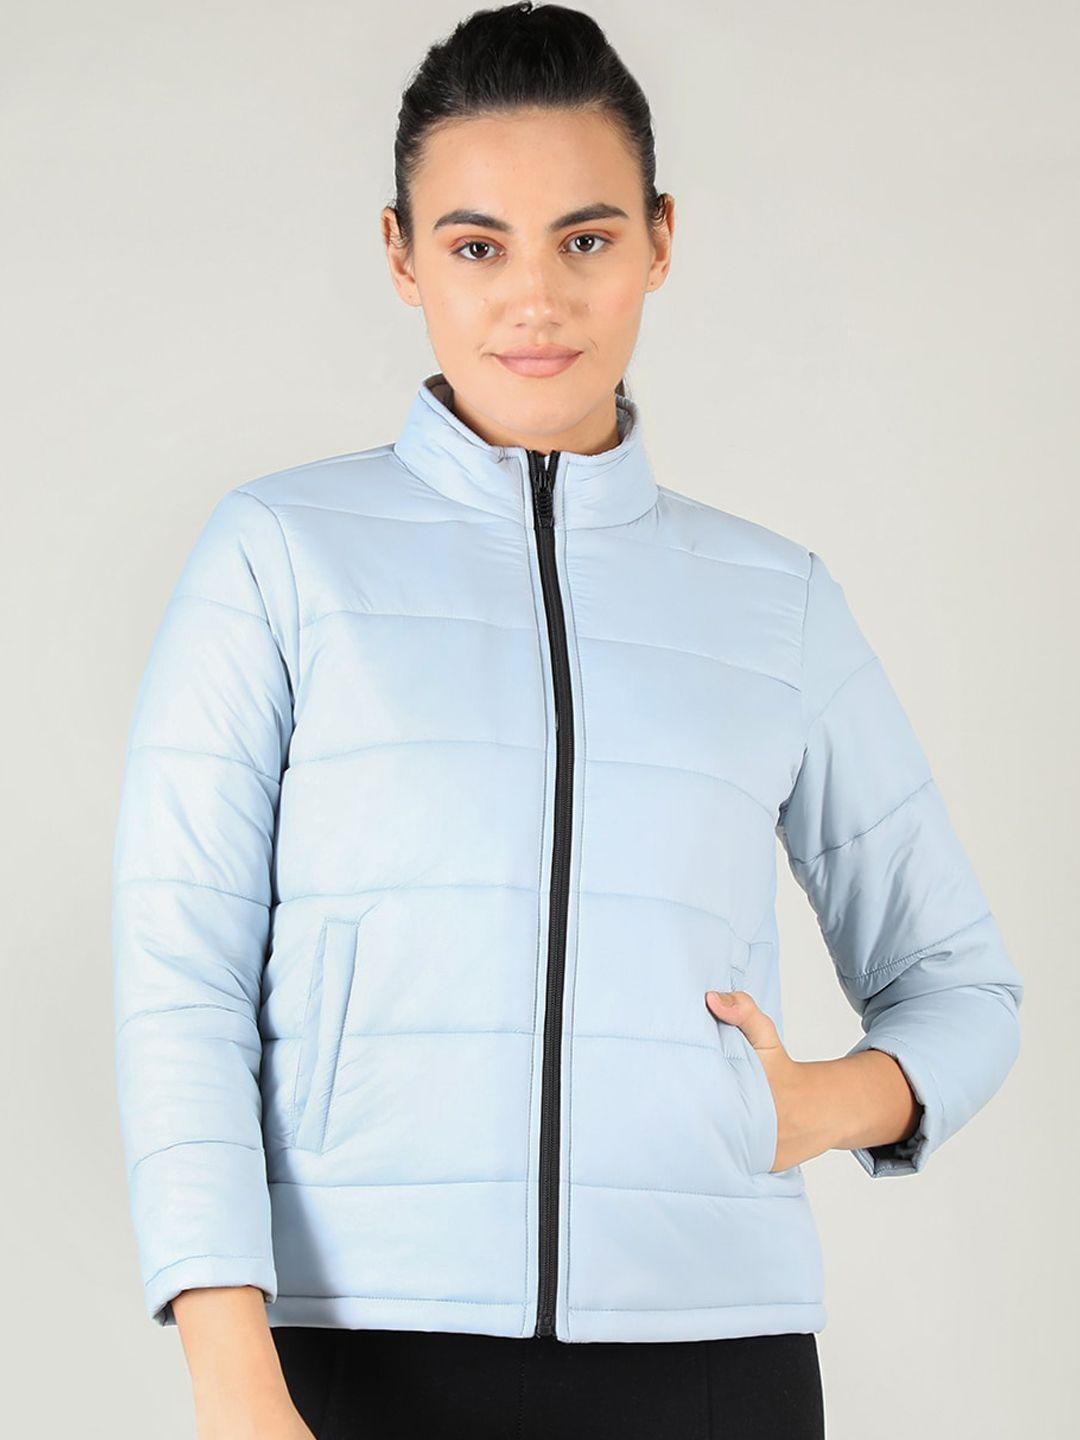 chkokko women blue lightweight outdoor puffer jacket